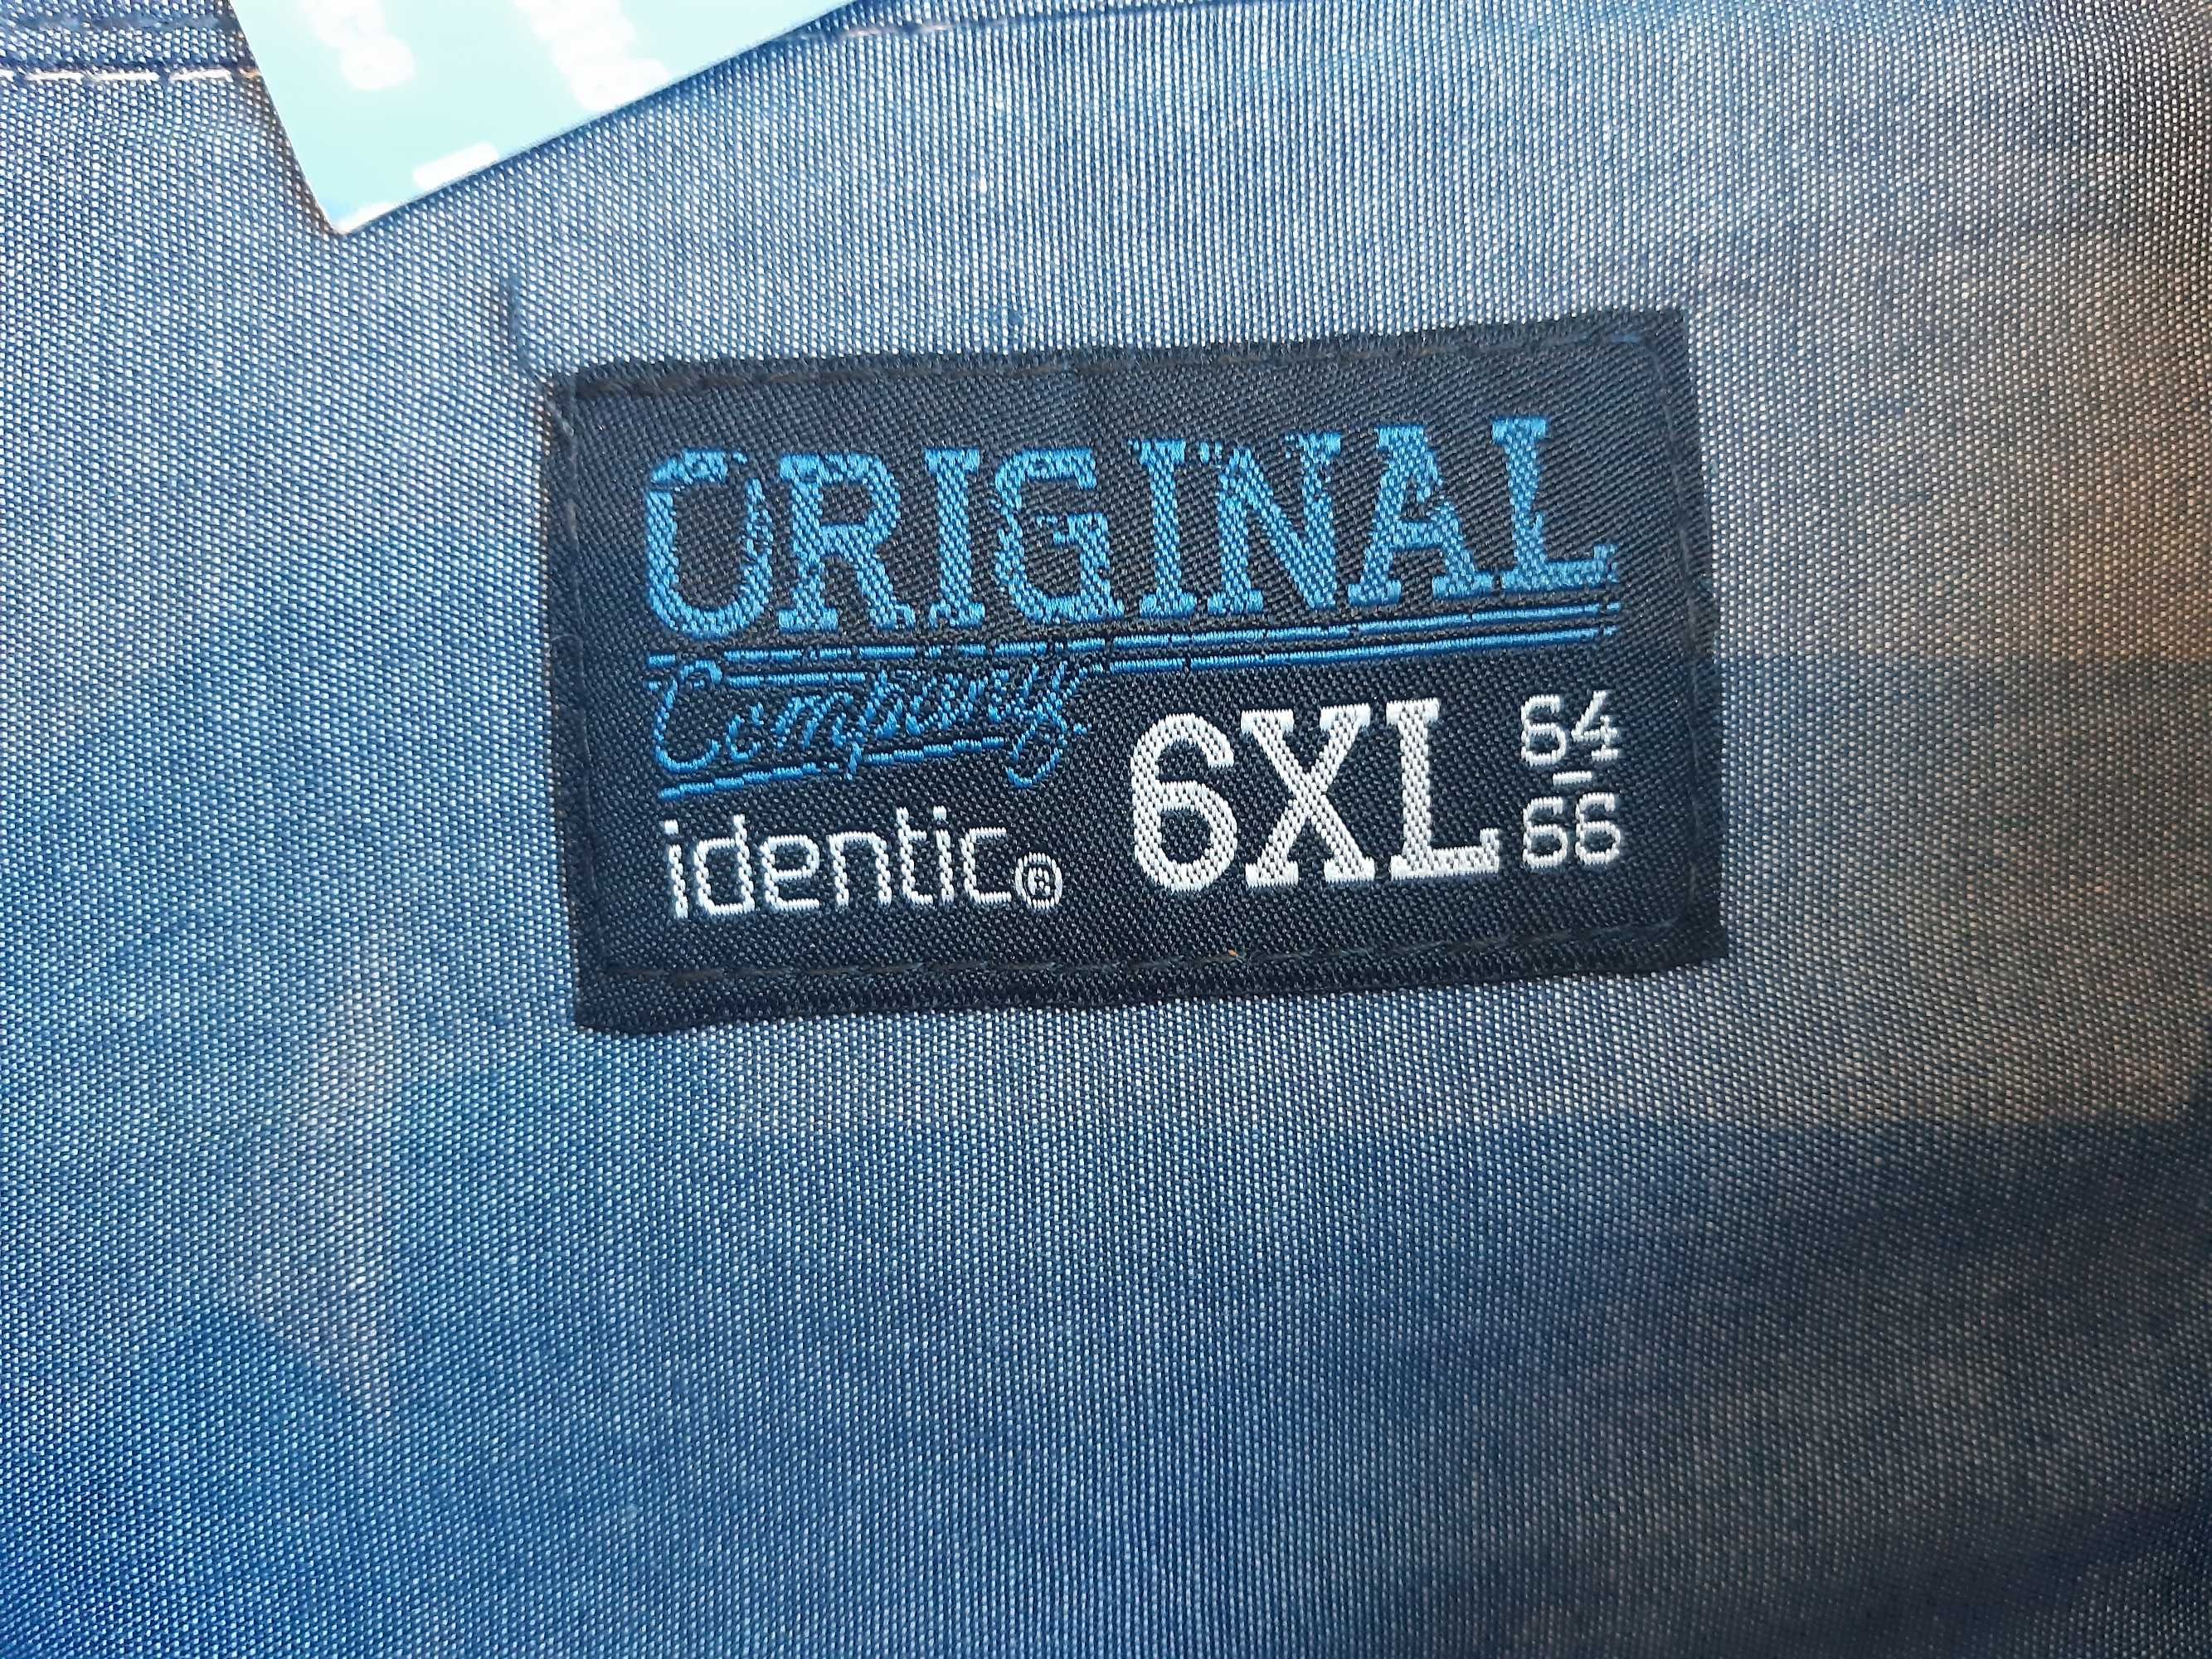 Nowa bawełniana koszula Identic, rozmiar 6XL z krótkim rękawem.